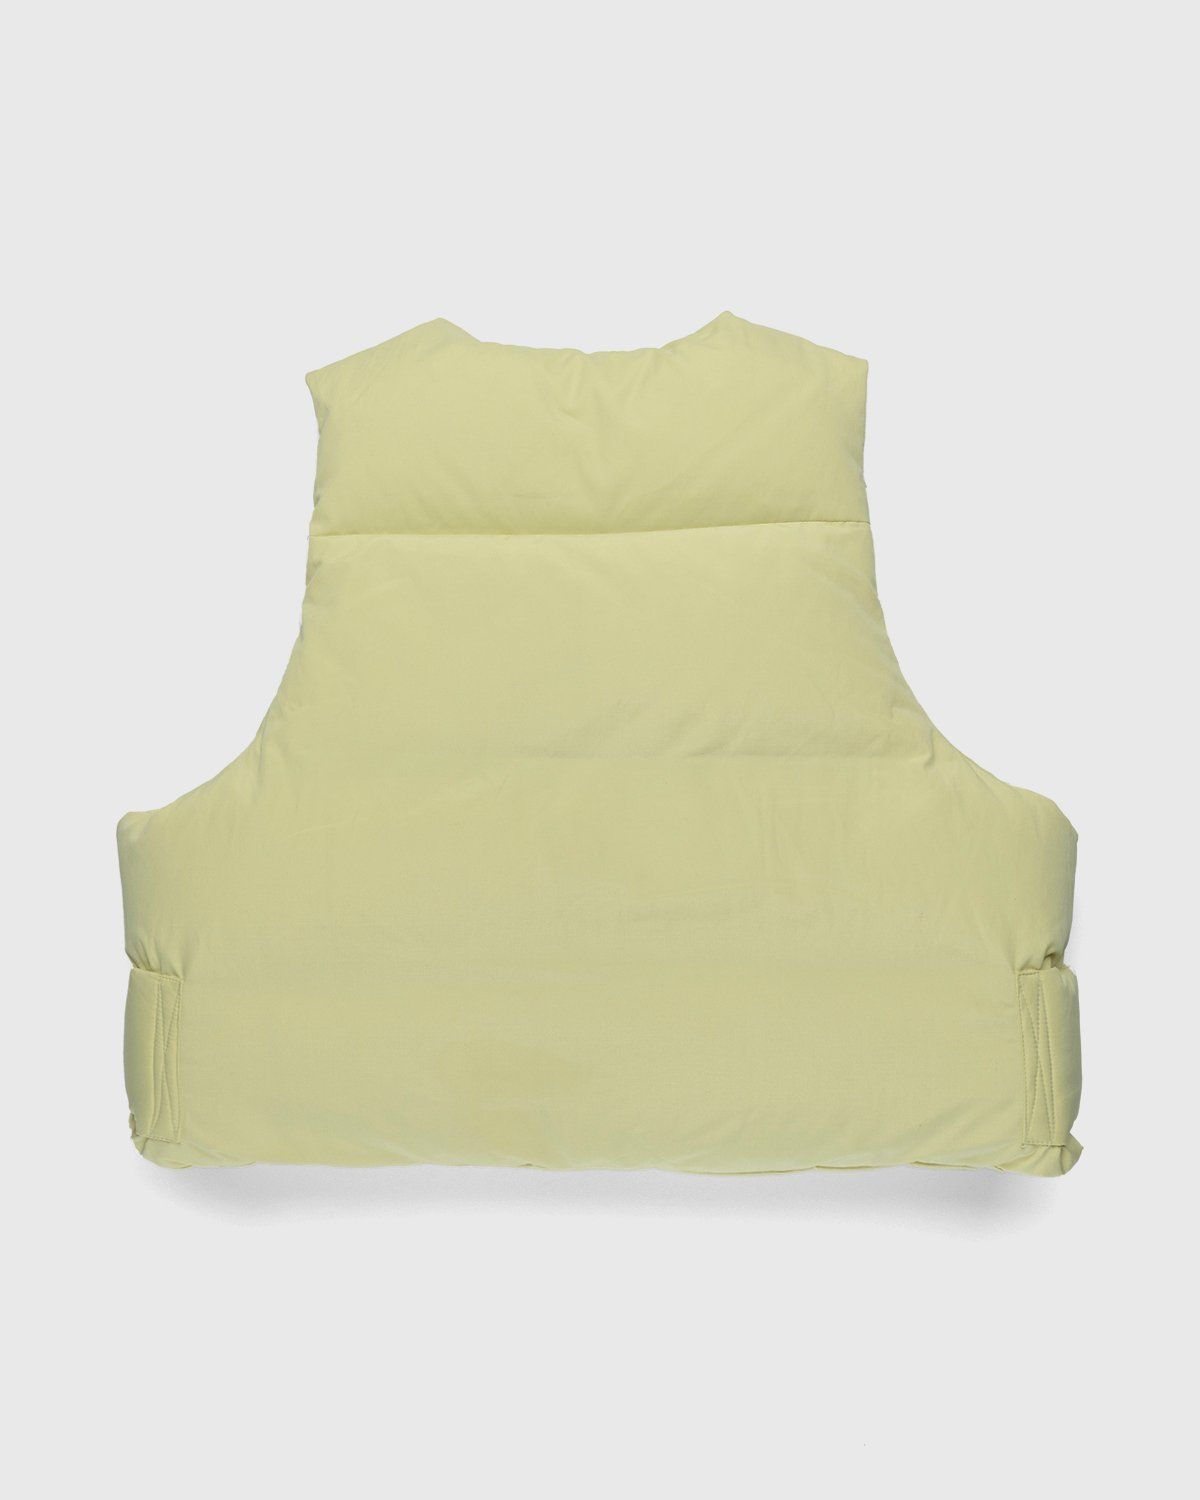 Entire Studios – Pillow Vest Blonde - Vests - Yellow - Image 2